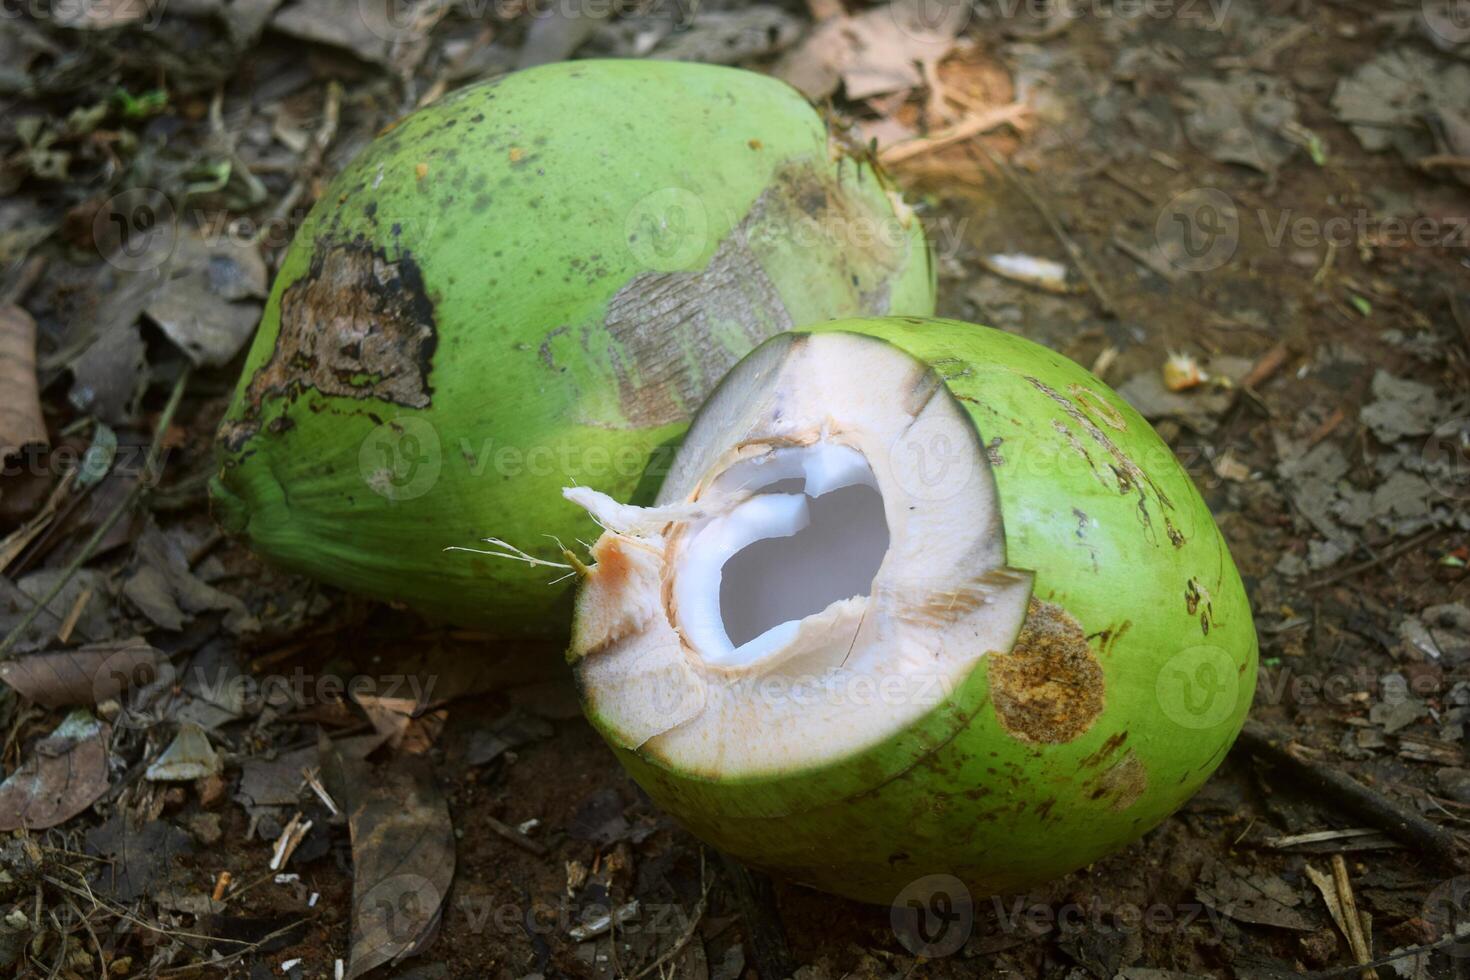 dos joven pelado verde cocos en un jardín foto